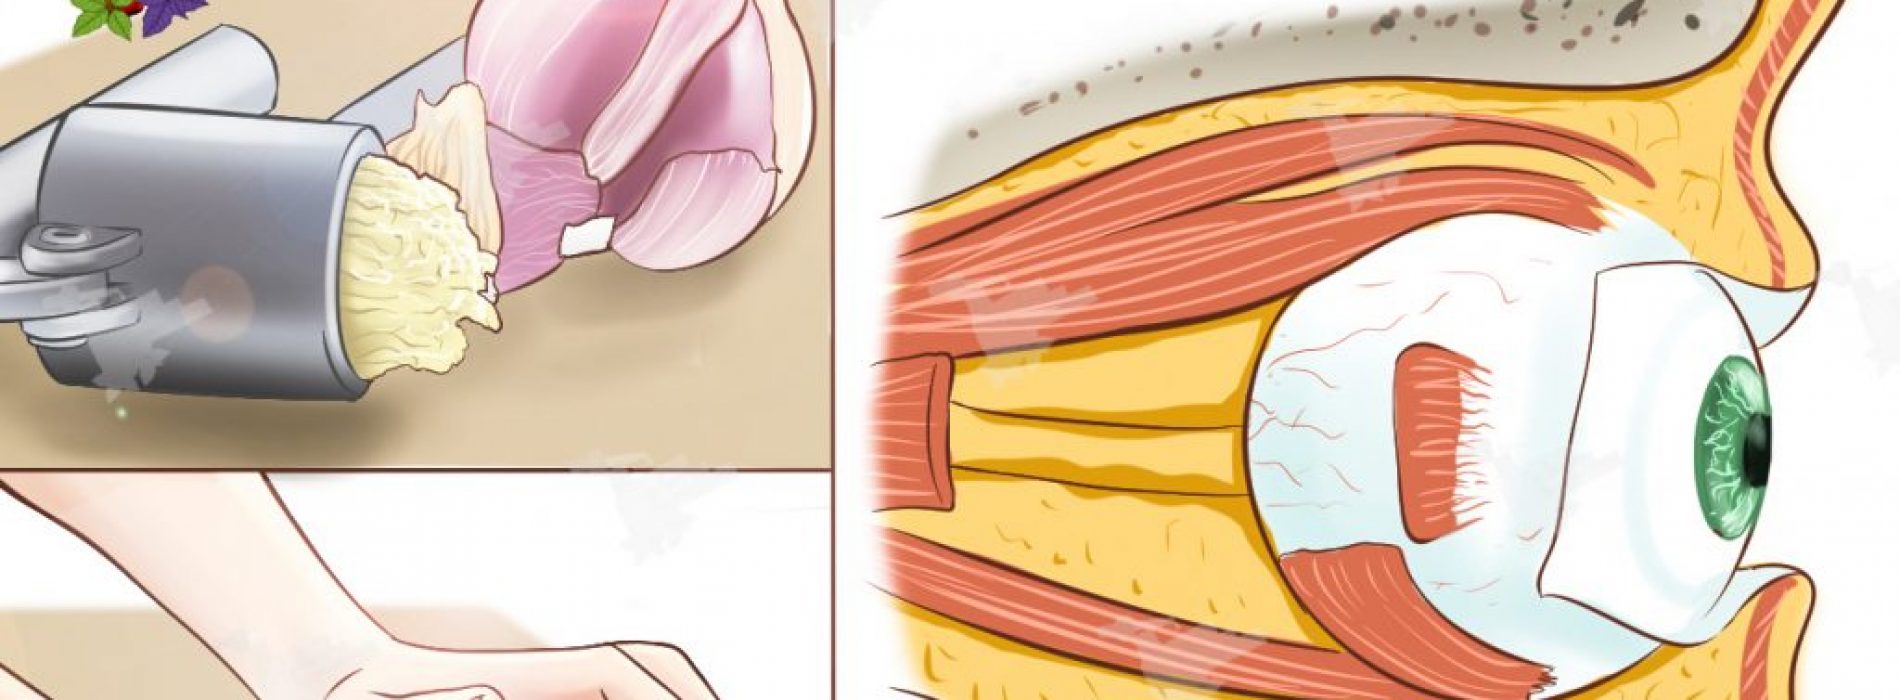 Hoe geperste knoflook te gebruiken om verlies van gezichtsvermogen terug te draaien zonder bril of chirurgie